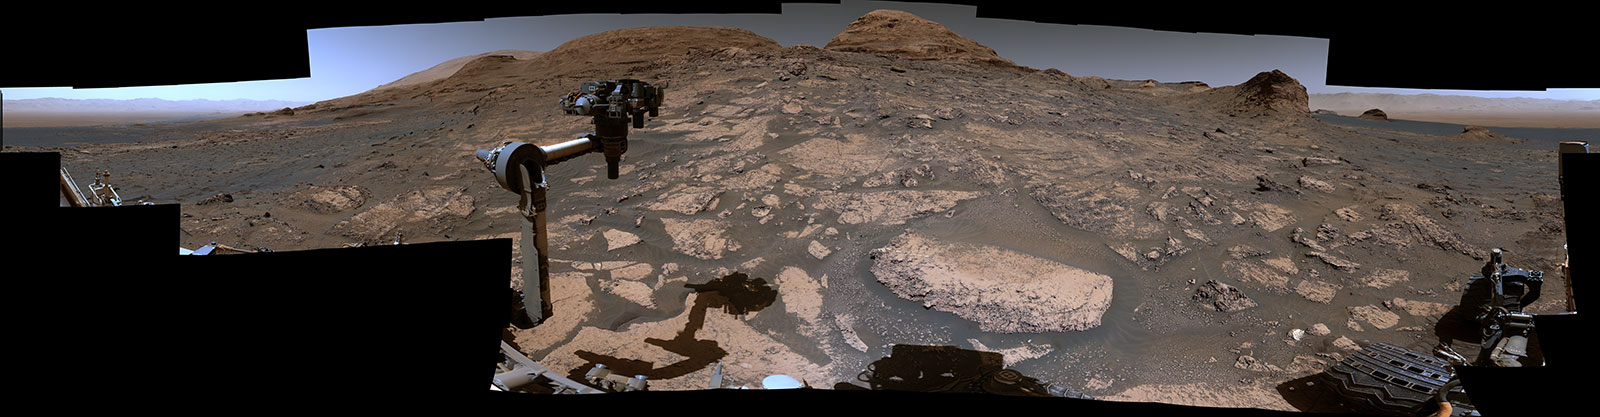 Bức ảnh toàn cảnh (panorama) với góc rộng 360 độ do Curiosity chụp. Ảnh: NASA